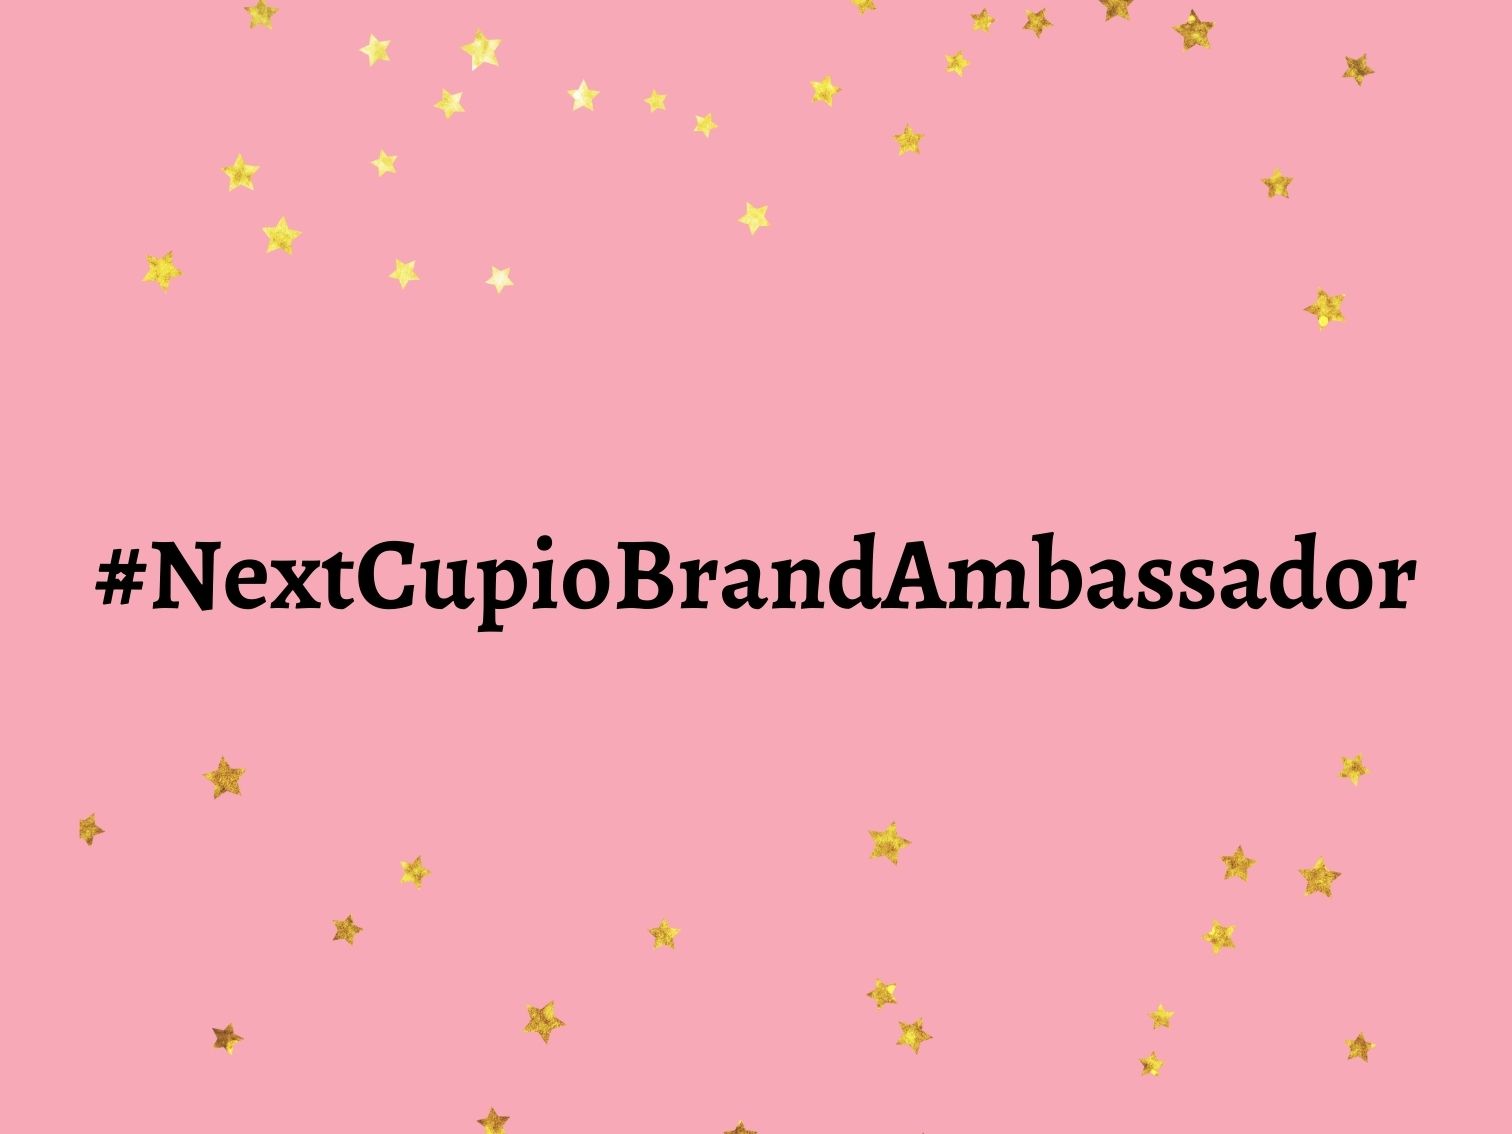 Vrei să fii brand-ambassador Cupio? Ce trebuie să faci